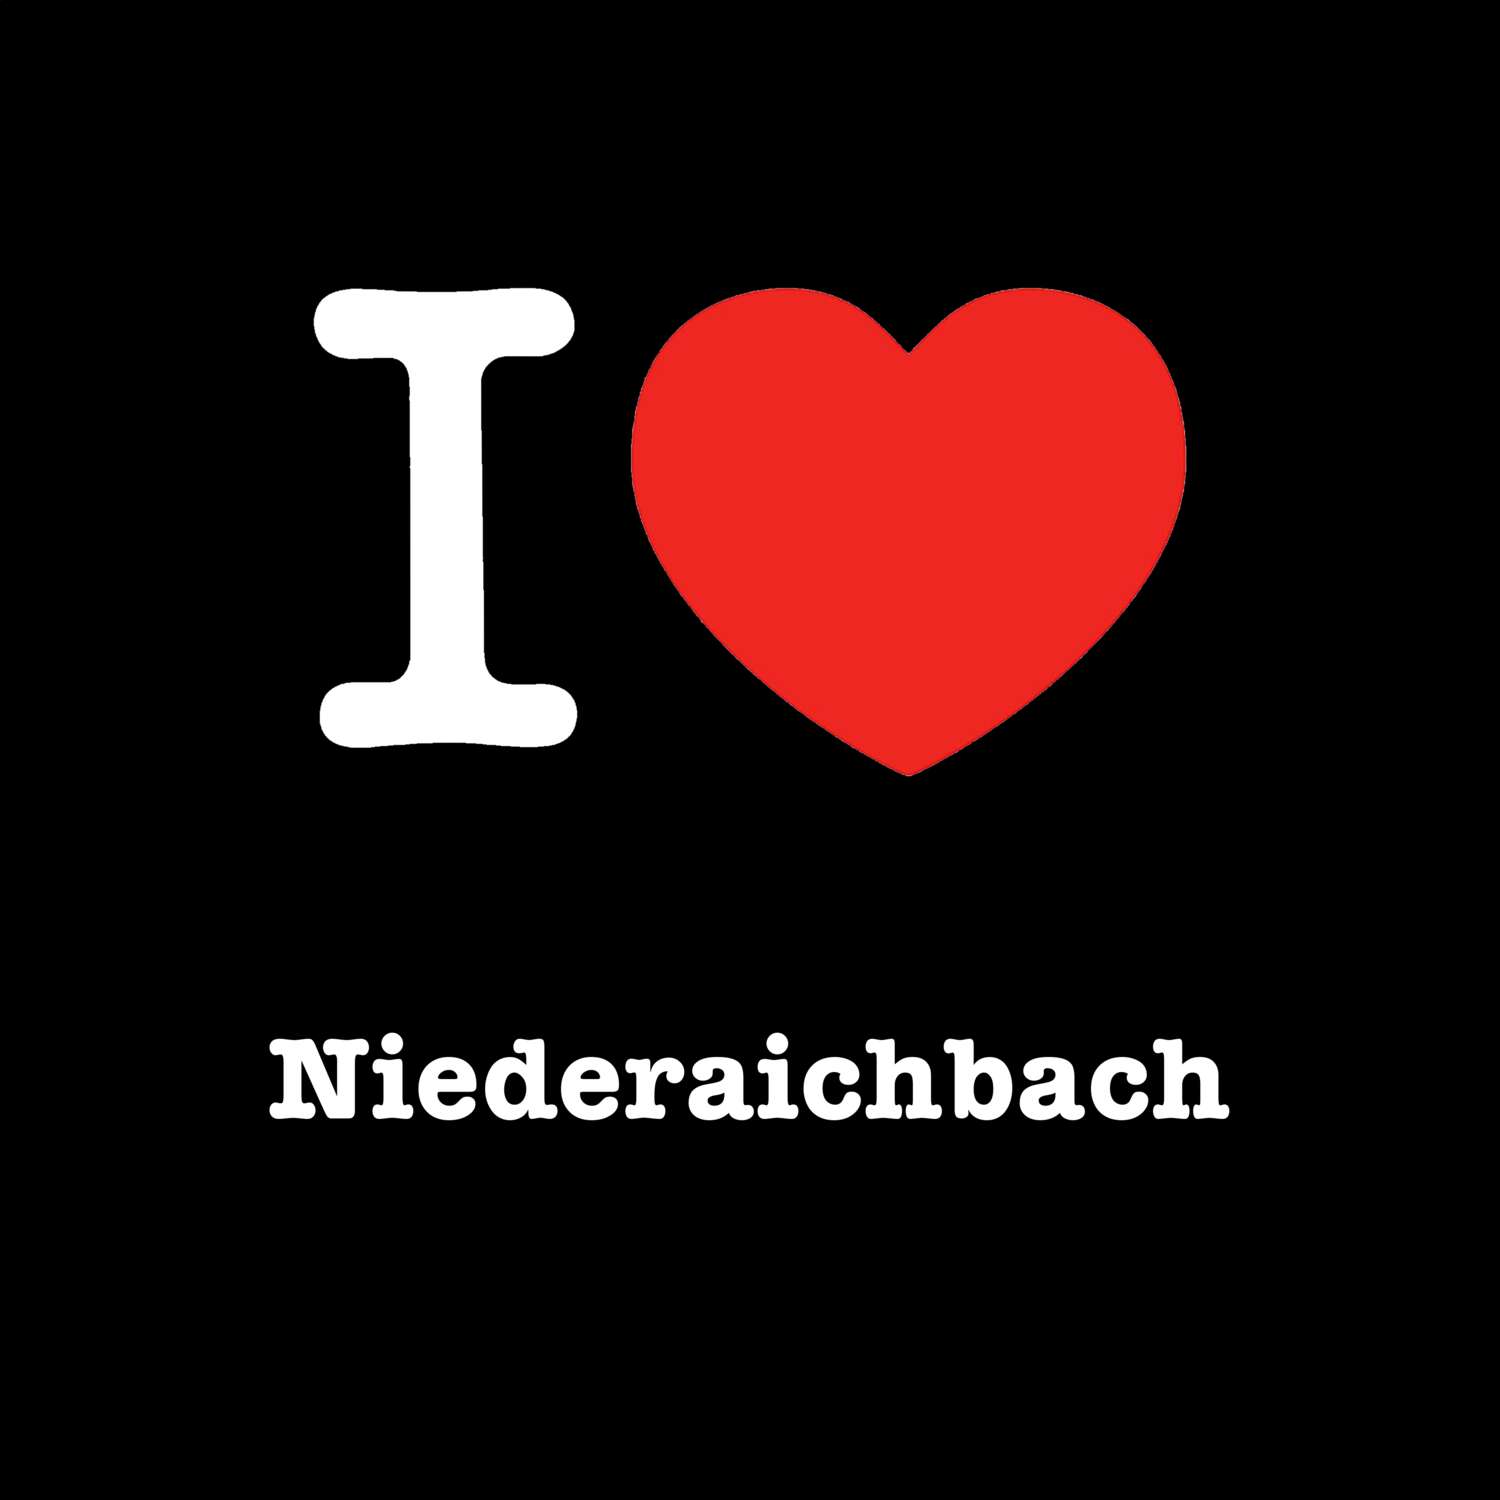 Niederaichbach T-Shirt »I love«